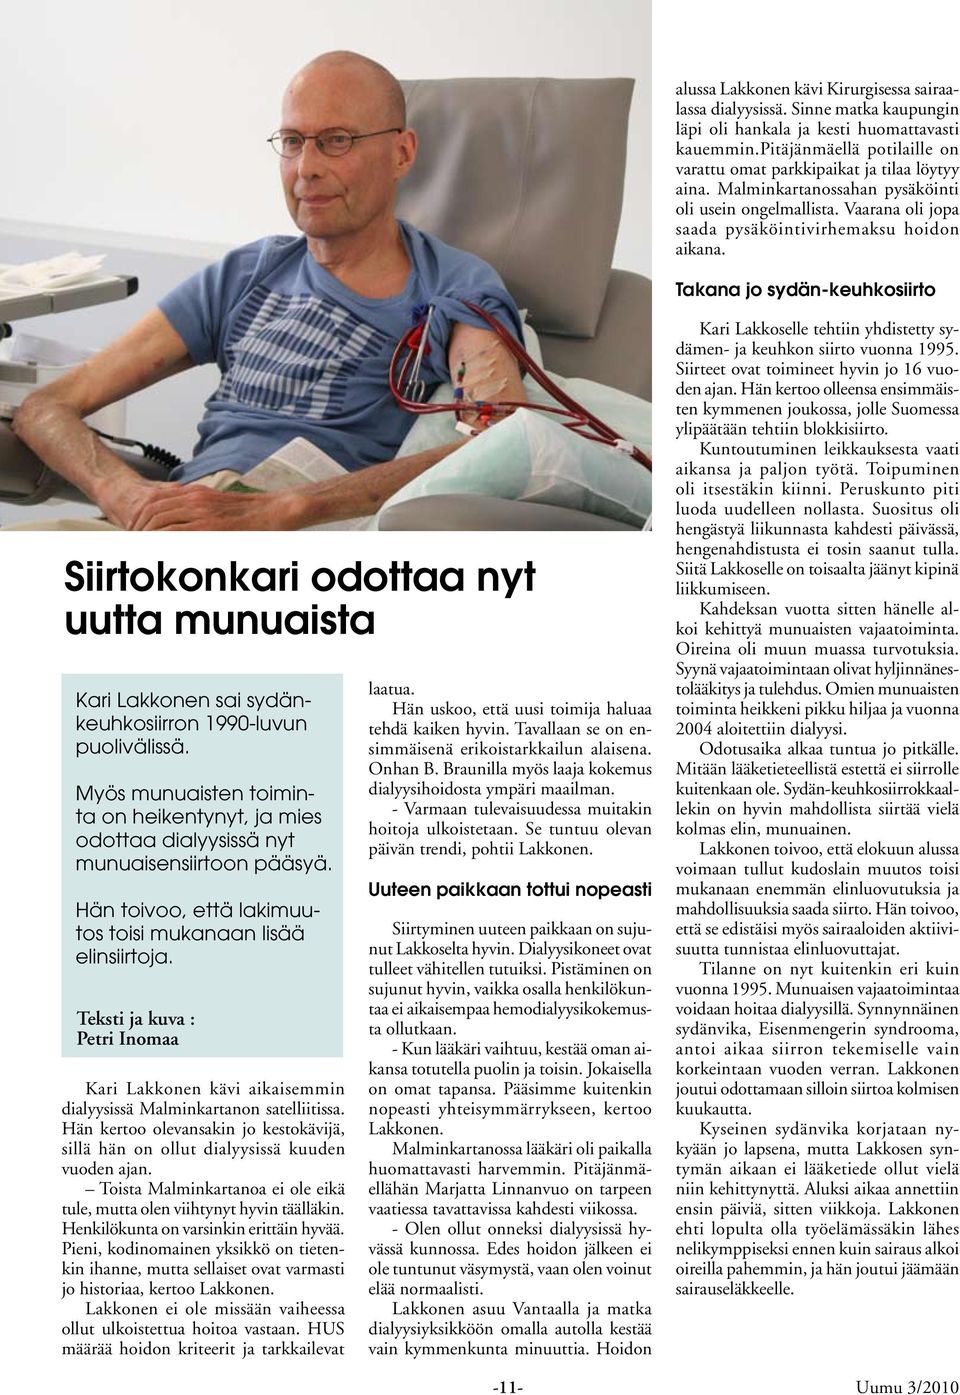 Takana jo sydän-keuhkosiirto Siirtokonkari odottaa nyt uutta munuaista Kari Lakkonen sai sydänkeuhkosiirron 1990-luvun puolivälissä.